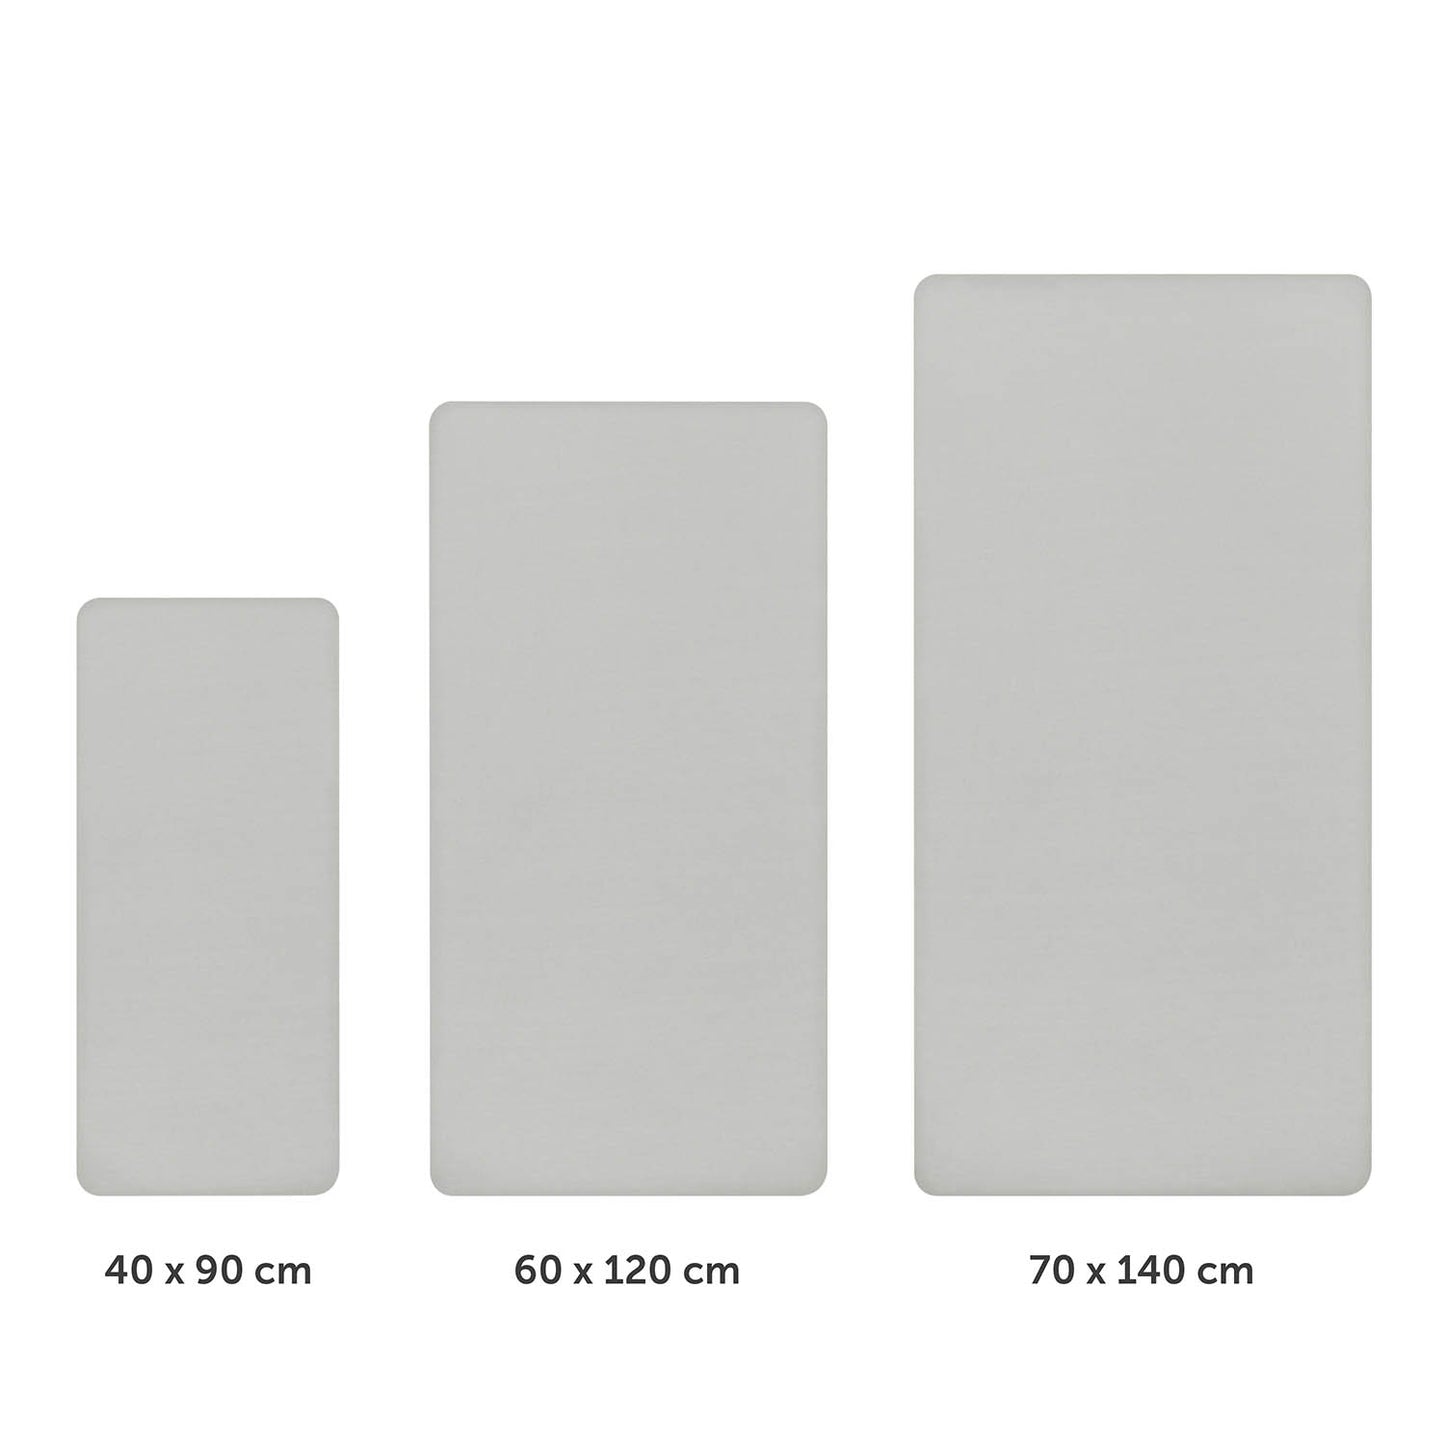 Drei unterschiedlich große graue Spannbettlaken nebeneinander dargestellt mit Größenangaben 40x90 cm 60x120 cm und 70x140 cm